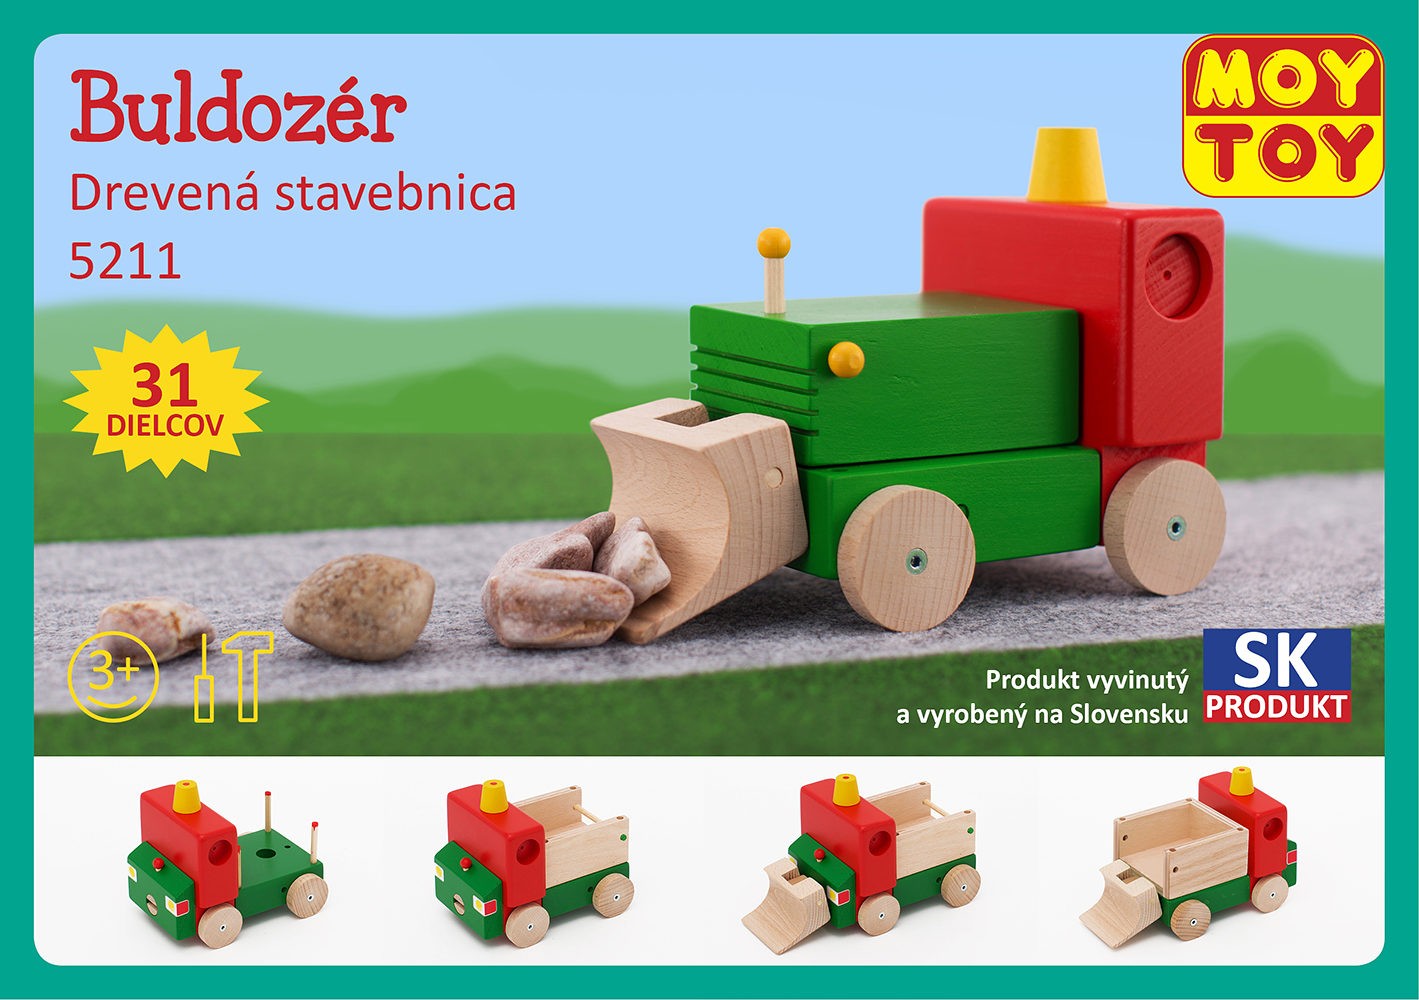 Moy Toy Dřevěná stavebnice Buldozer Moy Toy